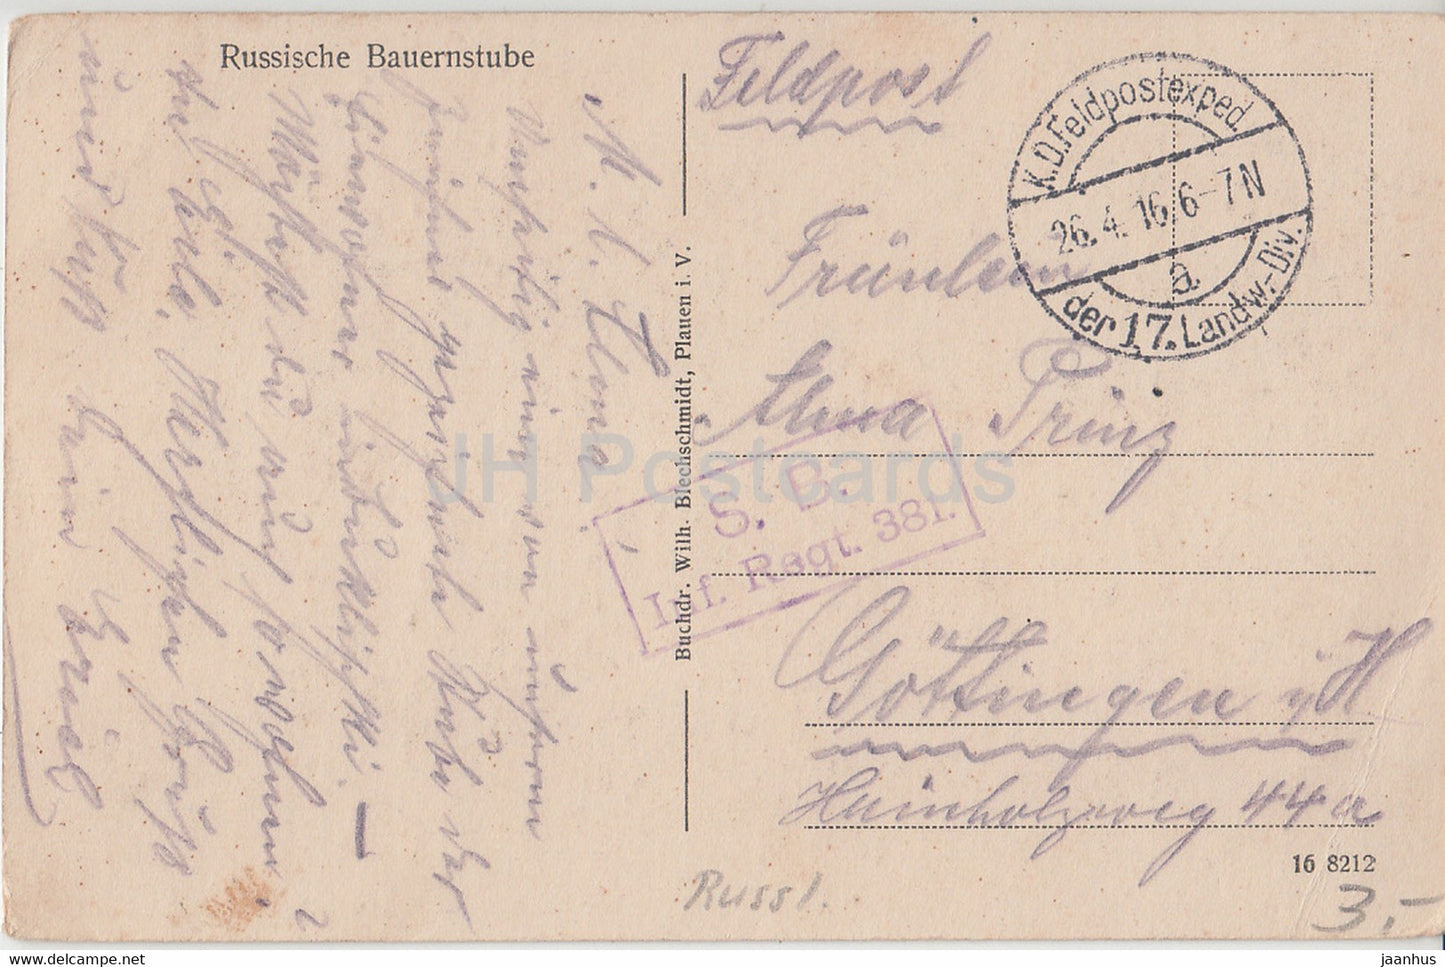 Illustration von Alfred Bachmann - Russische Bauernstube - SB Inf Regt - Feldpost - alte Postkarte - 1916 - Russland - gebraucht